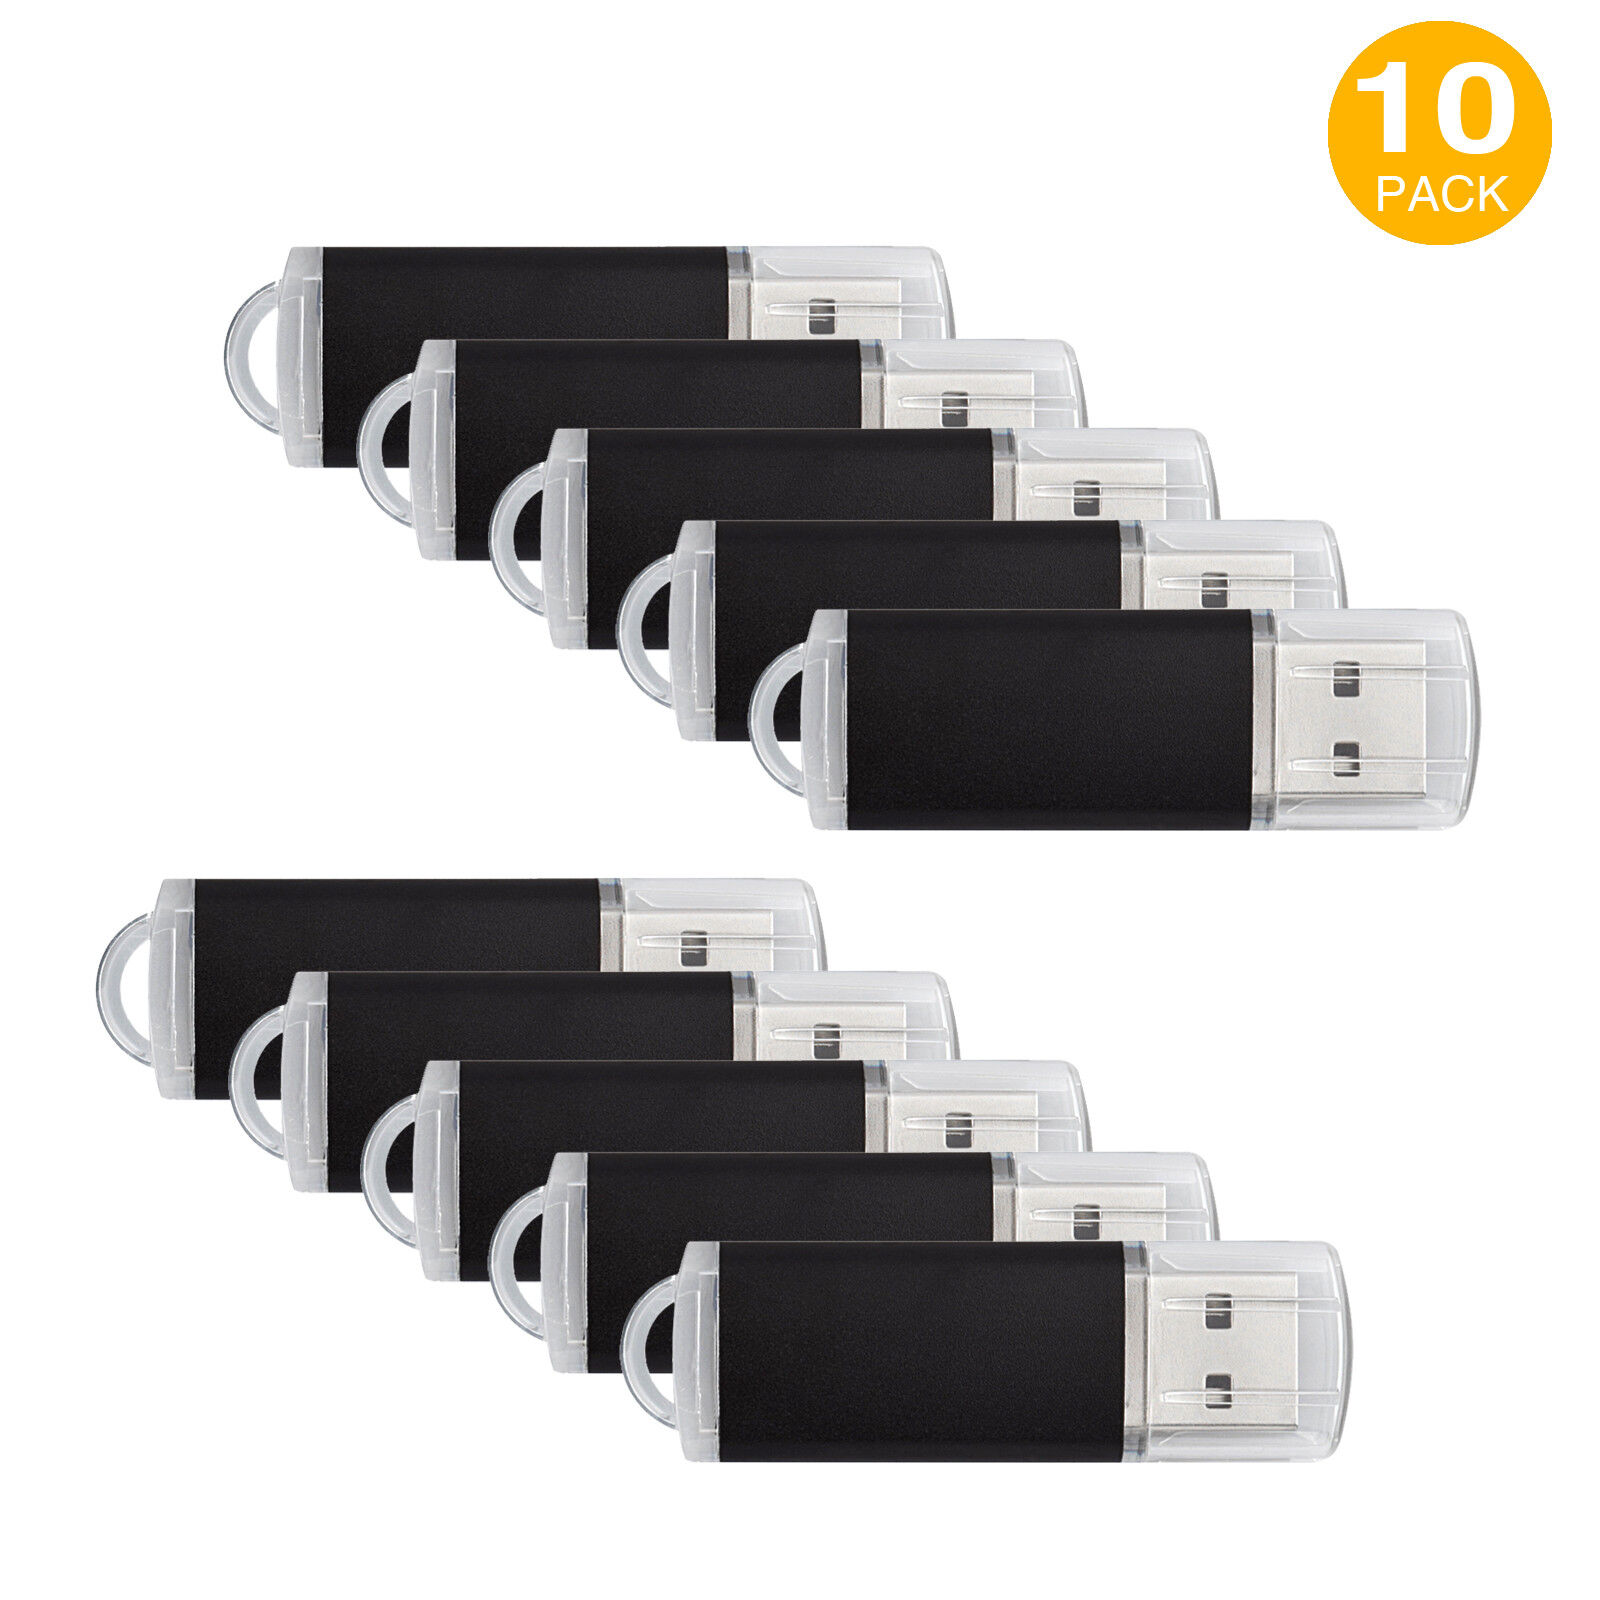 10PCS 4GB USB 2.0 Flash Drive Rectangle Model Thumb Pen Drive Flash Memory Stick